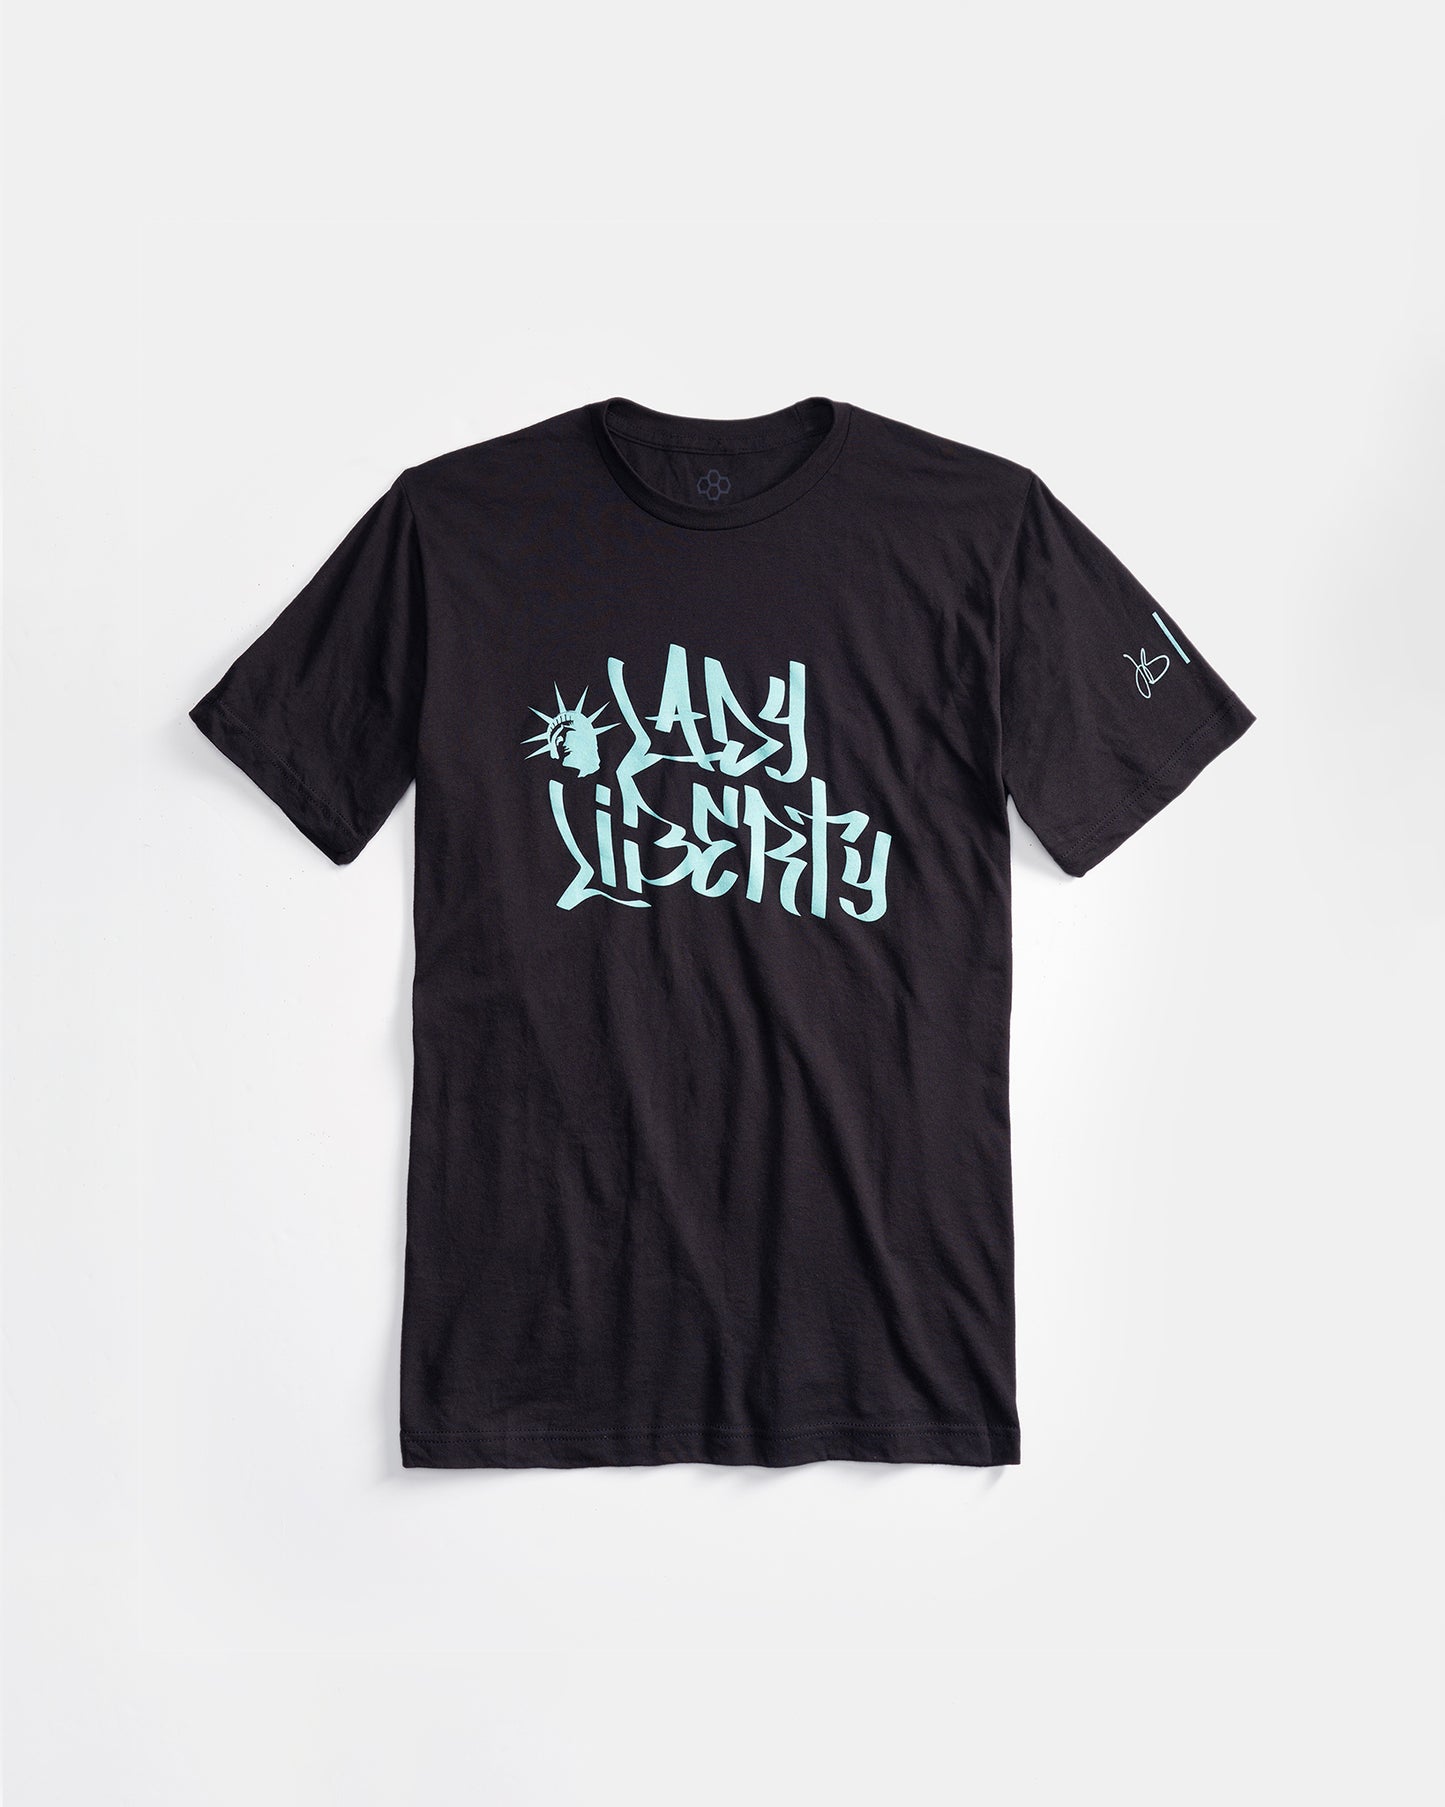 JB Lady Liberty Script T-Shirt